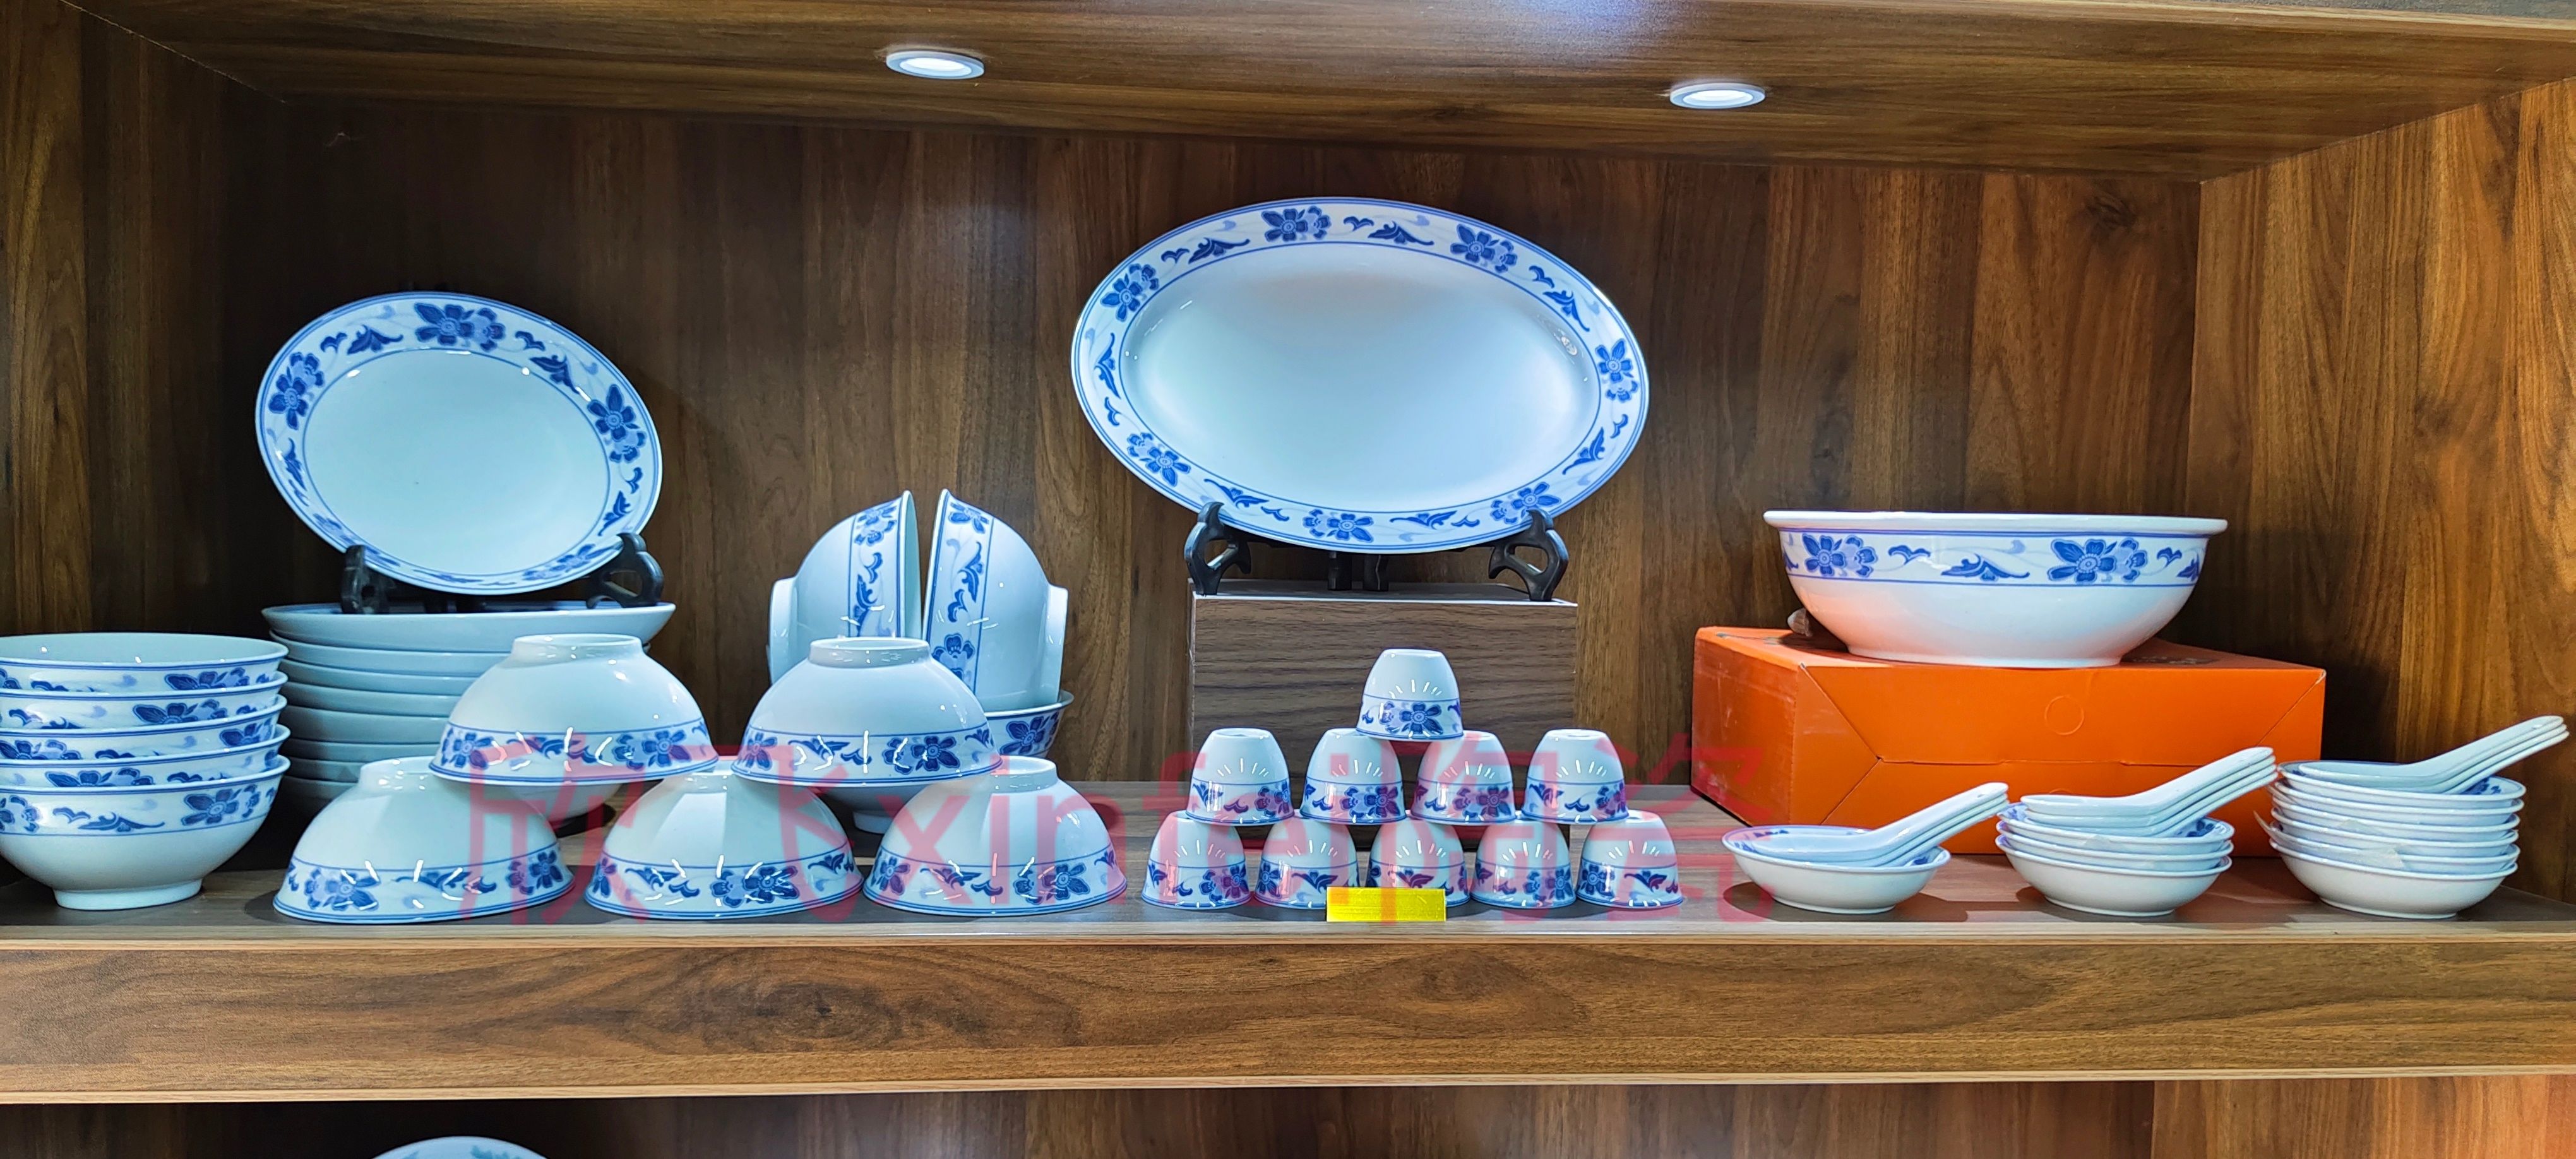 醴陵釉下彩群力老瓷器54头陶瓷餐具套装礼品瓷家用日用蓝海棠高温